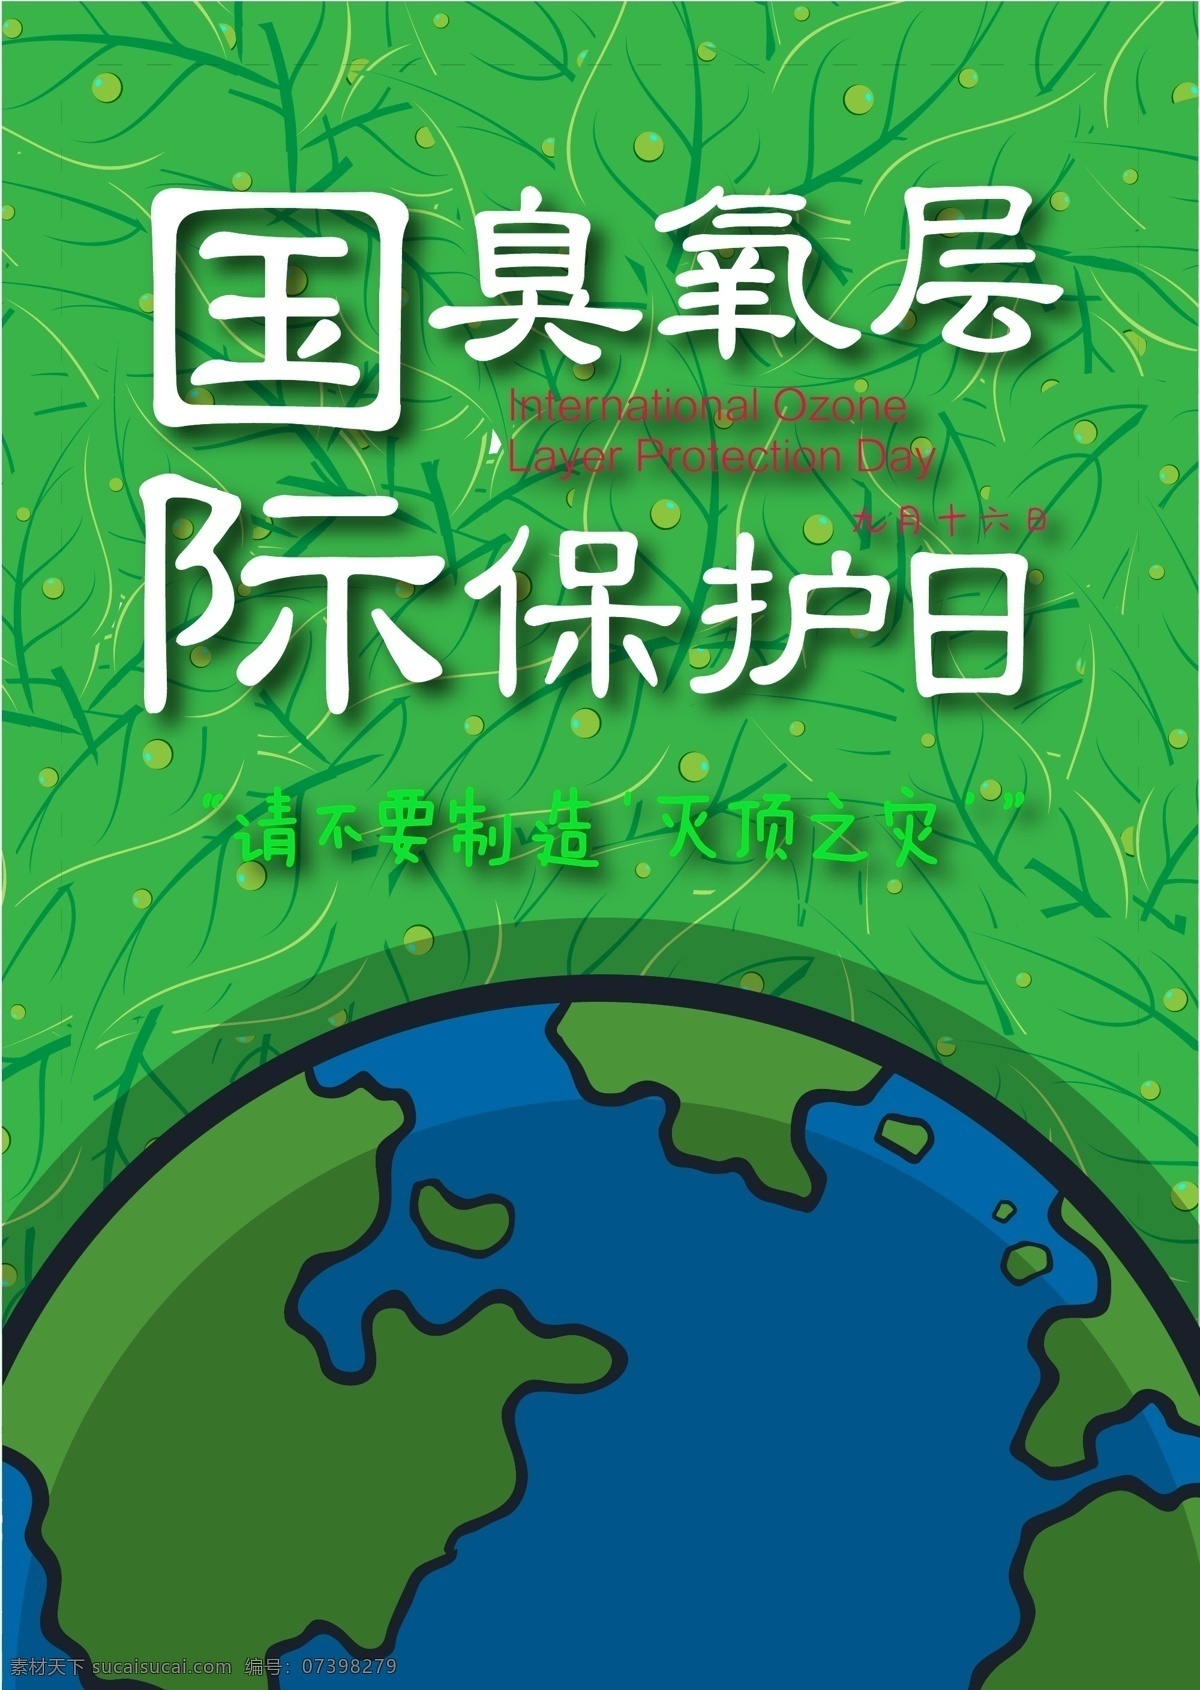 国际 臭氧层 保护 日 海报 9月16日 绿色 公益 宣传 臭氧层保护日